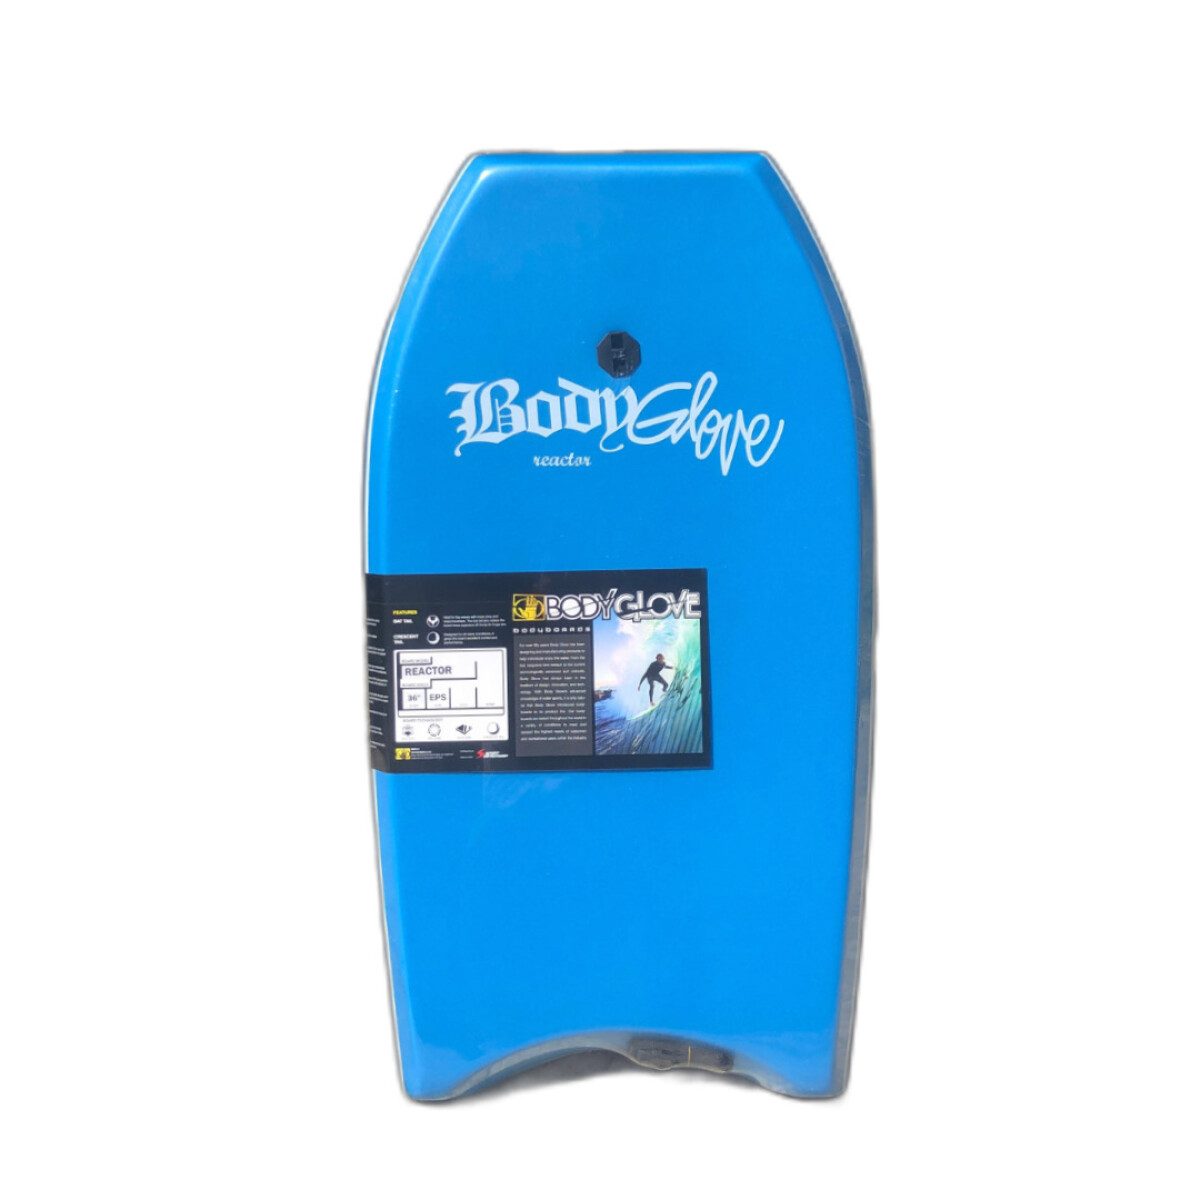 Tabla BodyBoard Morey Body Glove Reactor 36 - Celeste 